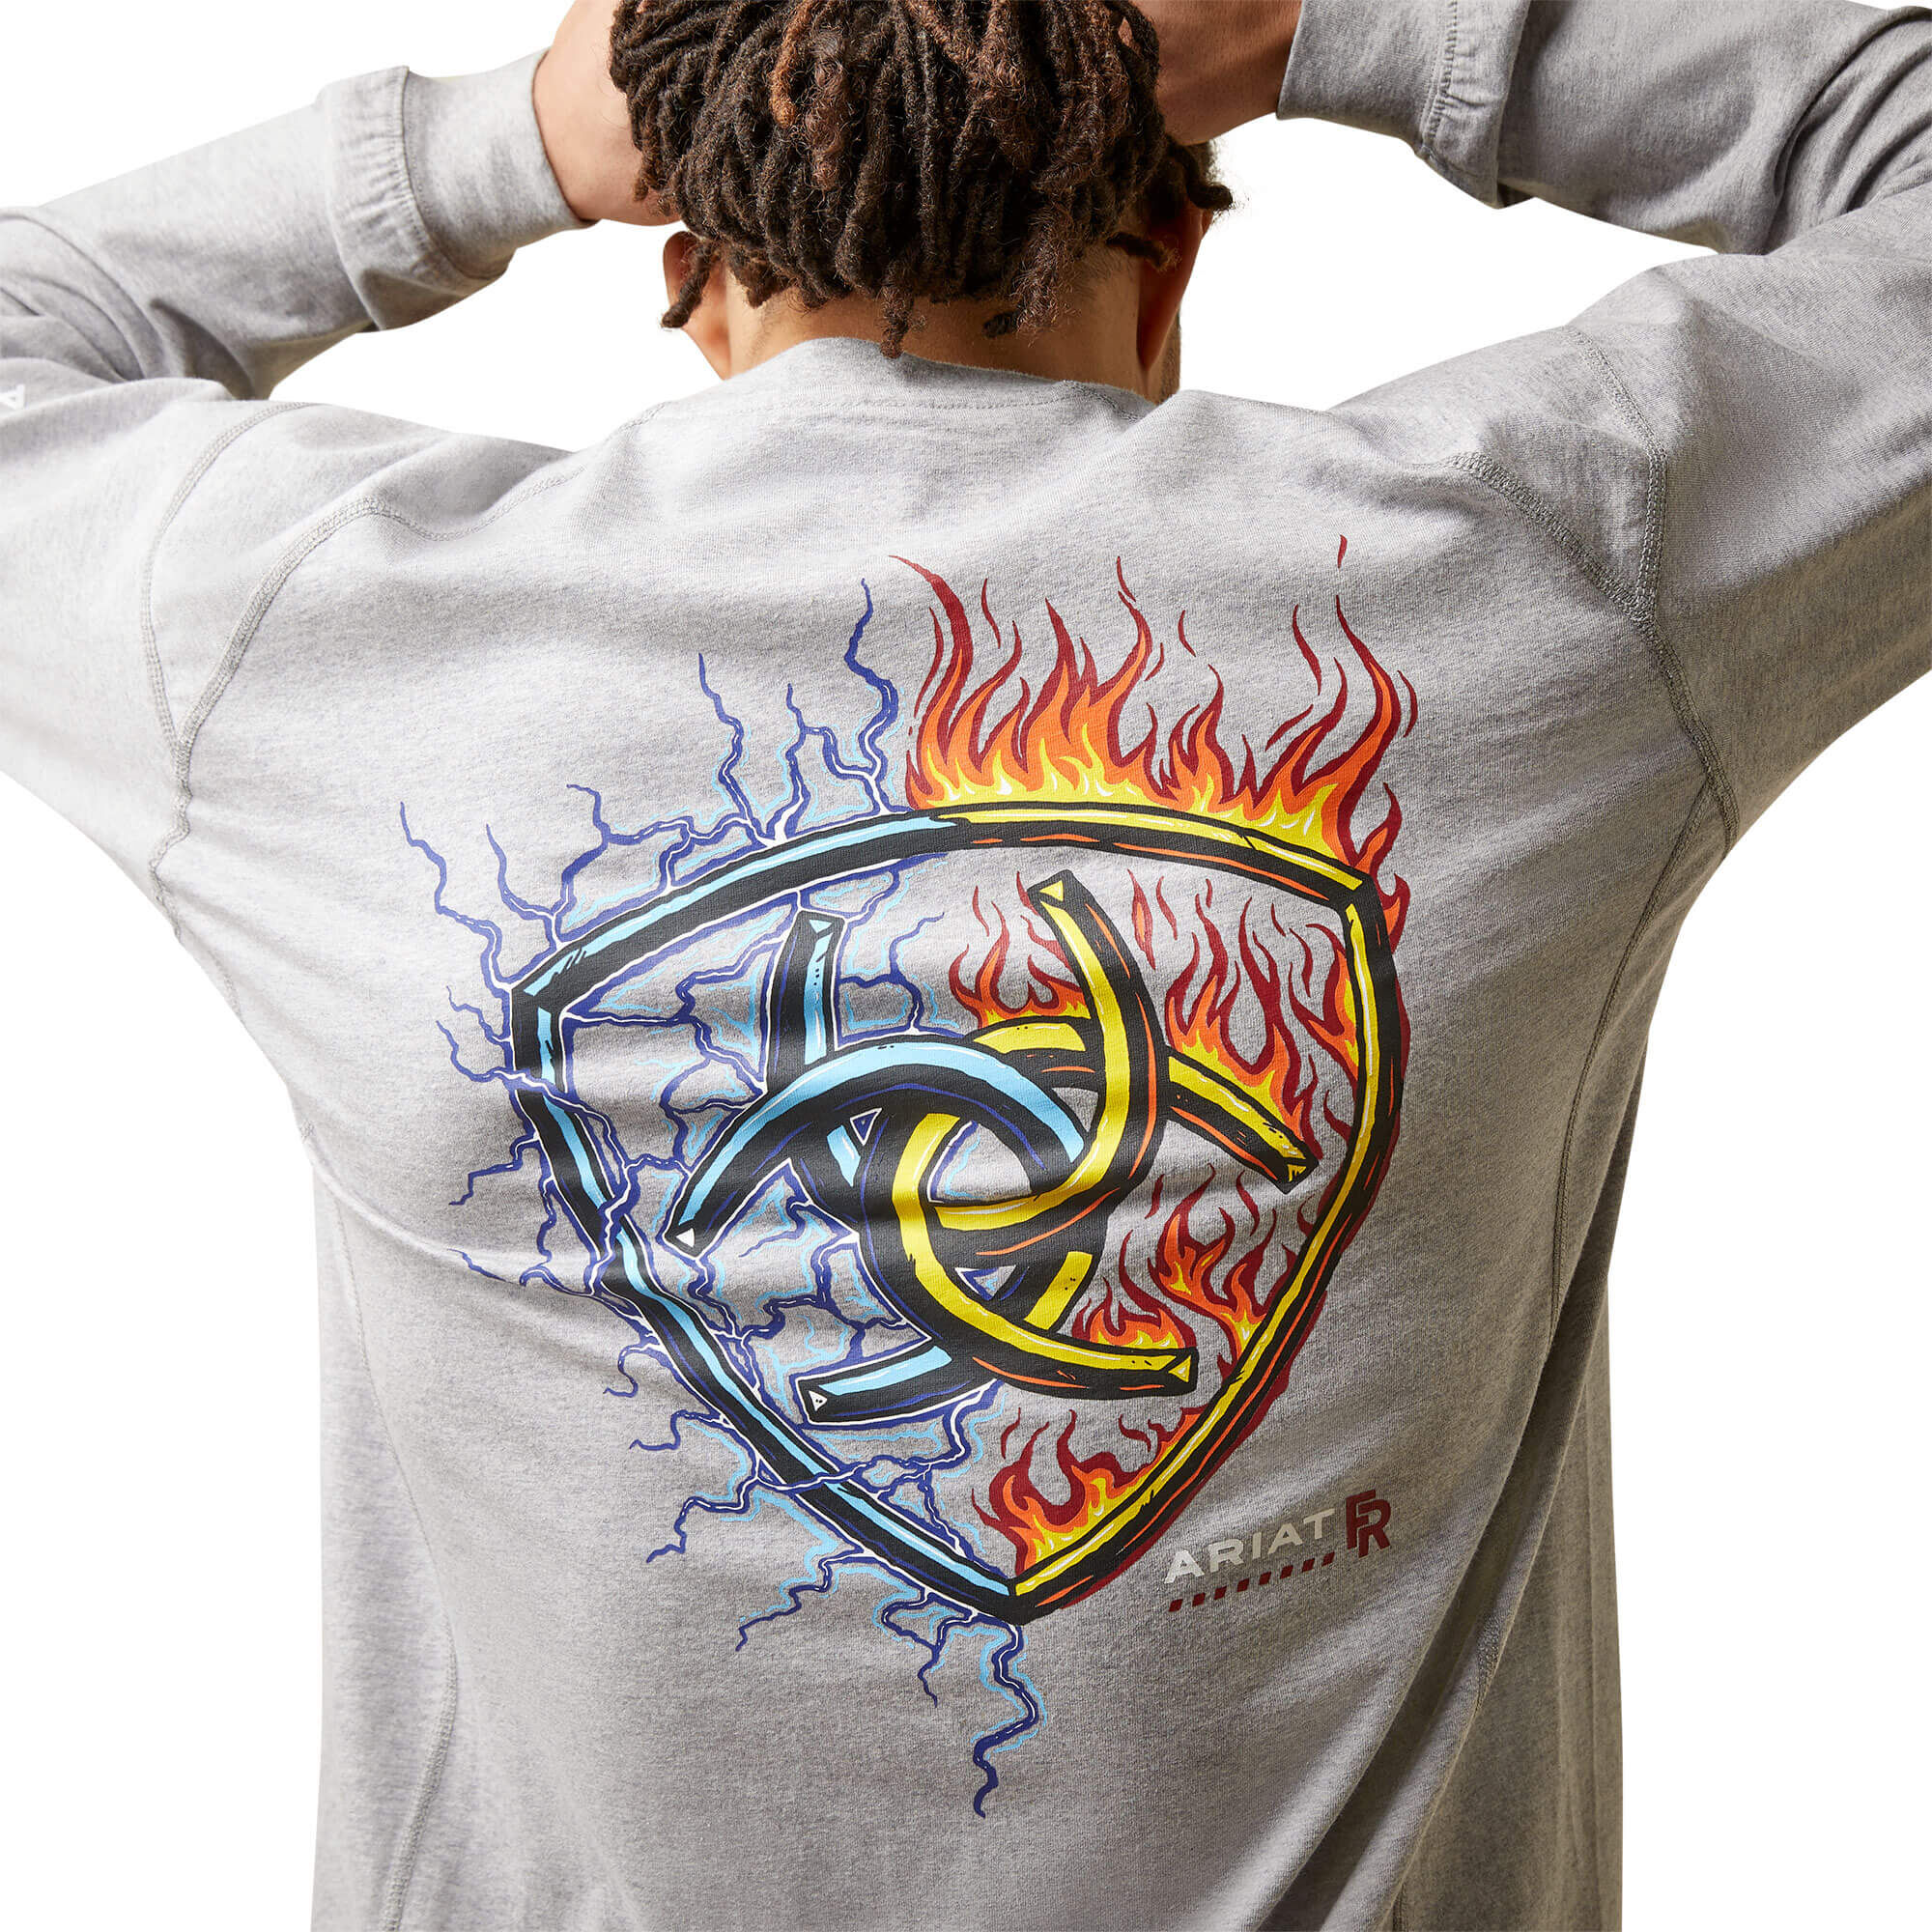 FR Air Shock Fire T-Shirt | Ariat